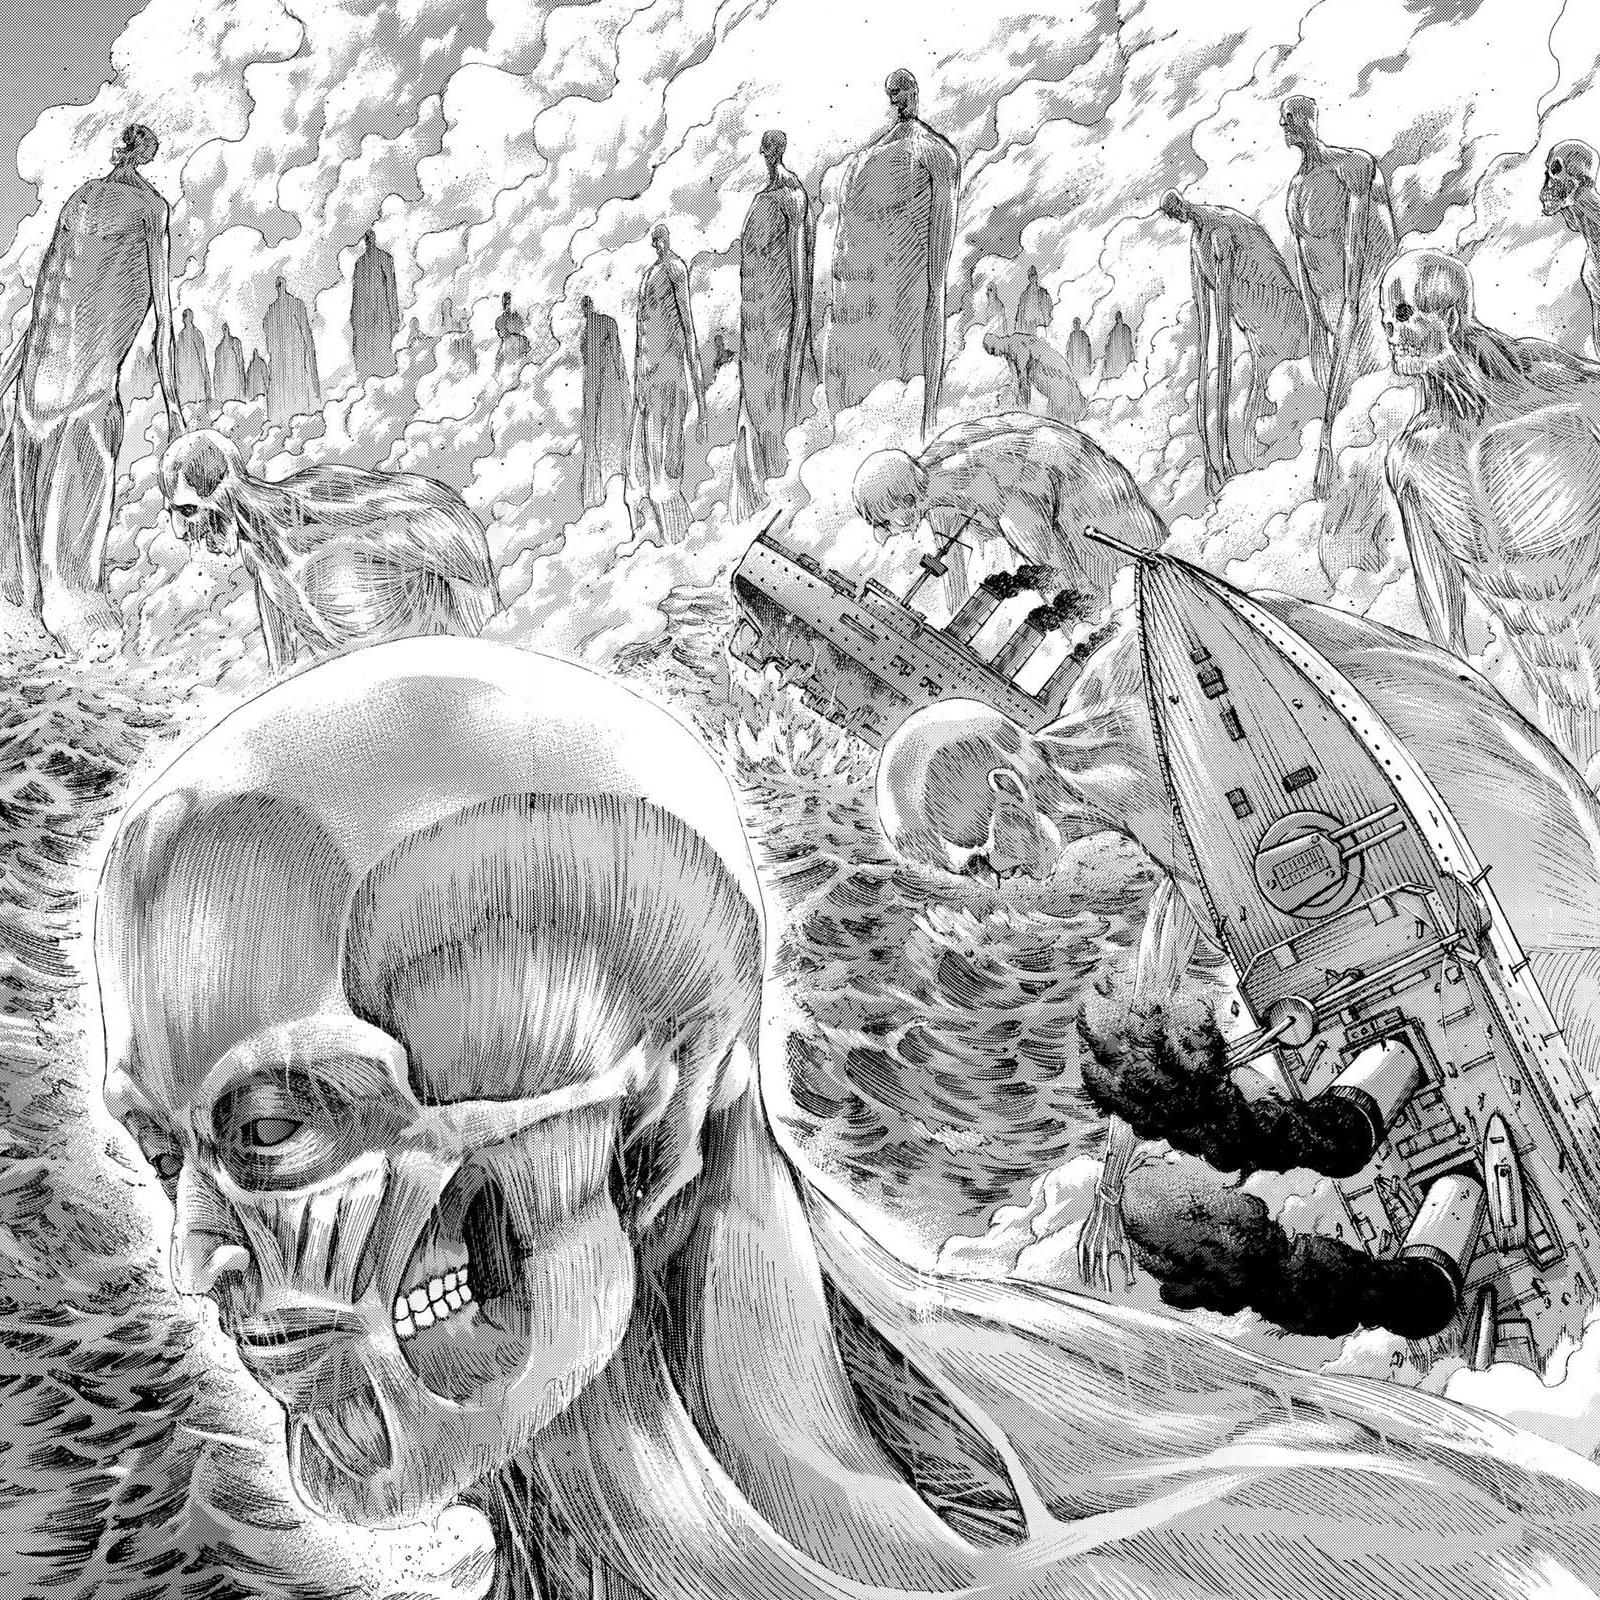 Attack on Titan to Release a Titan-Sized Manga Volume